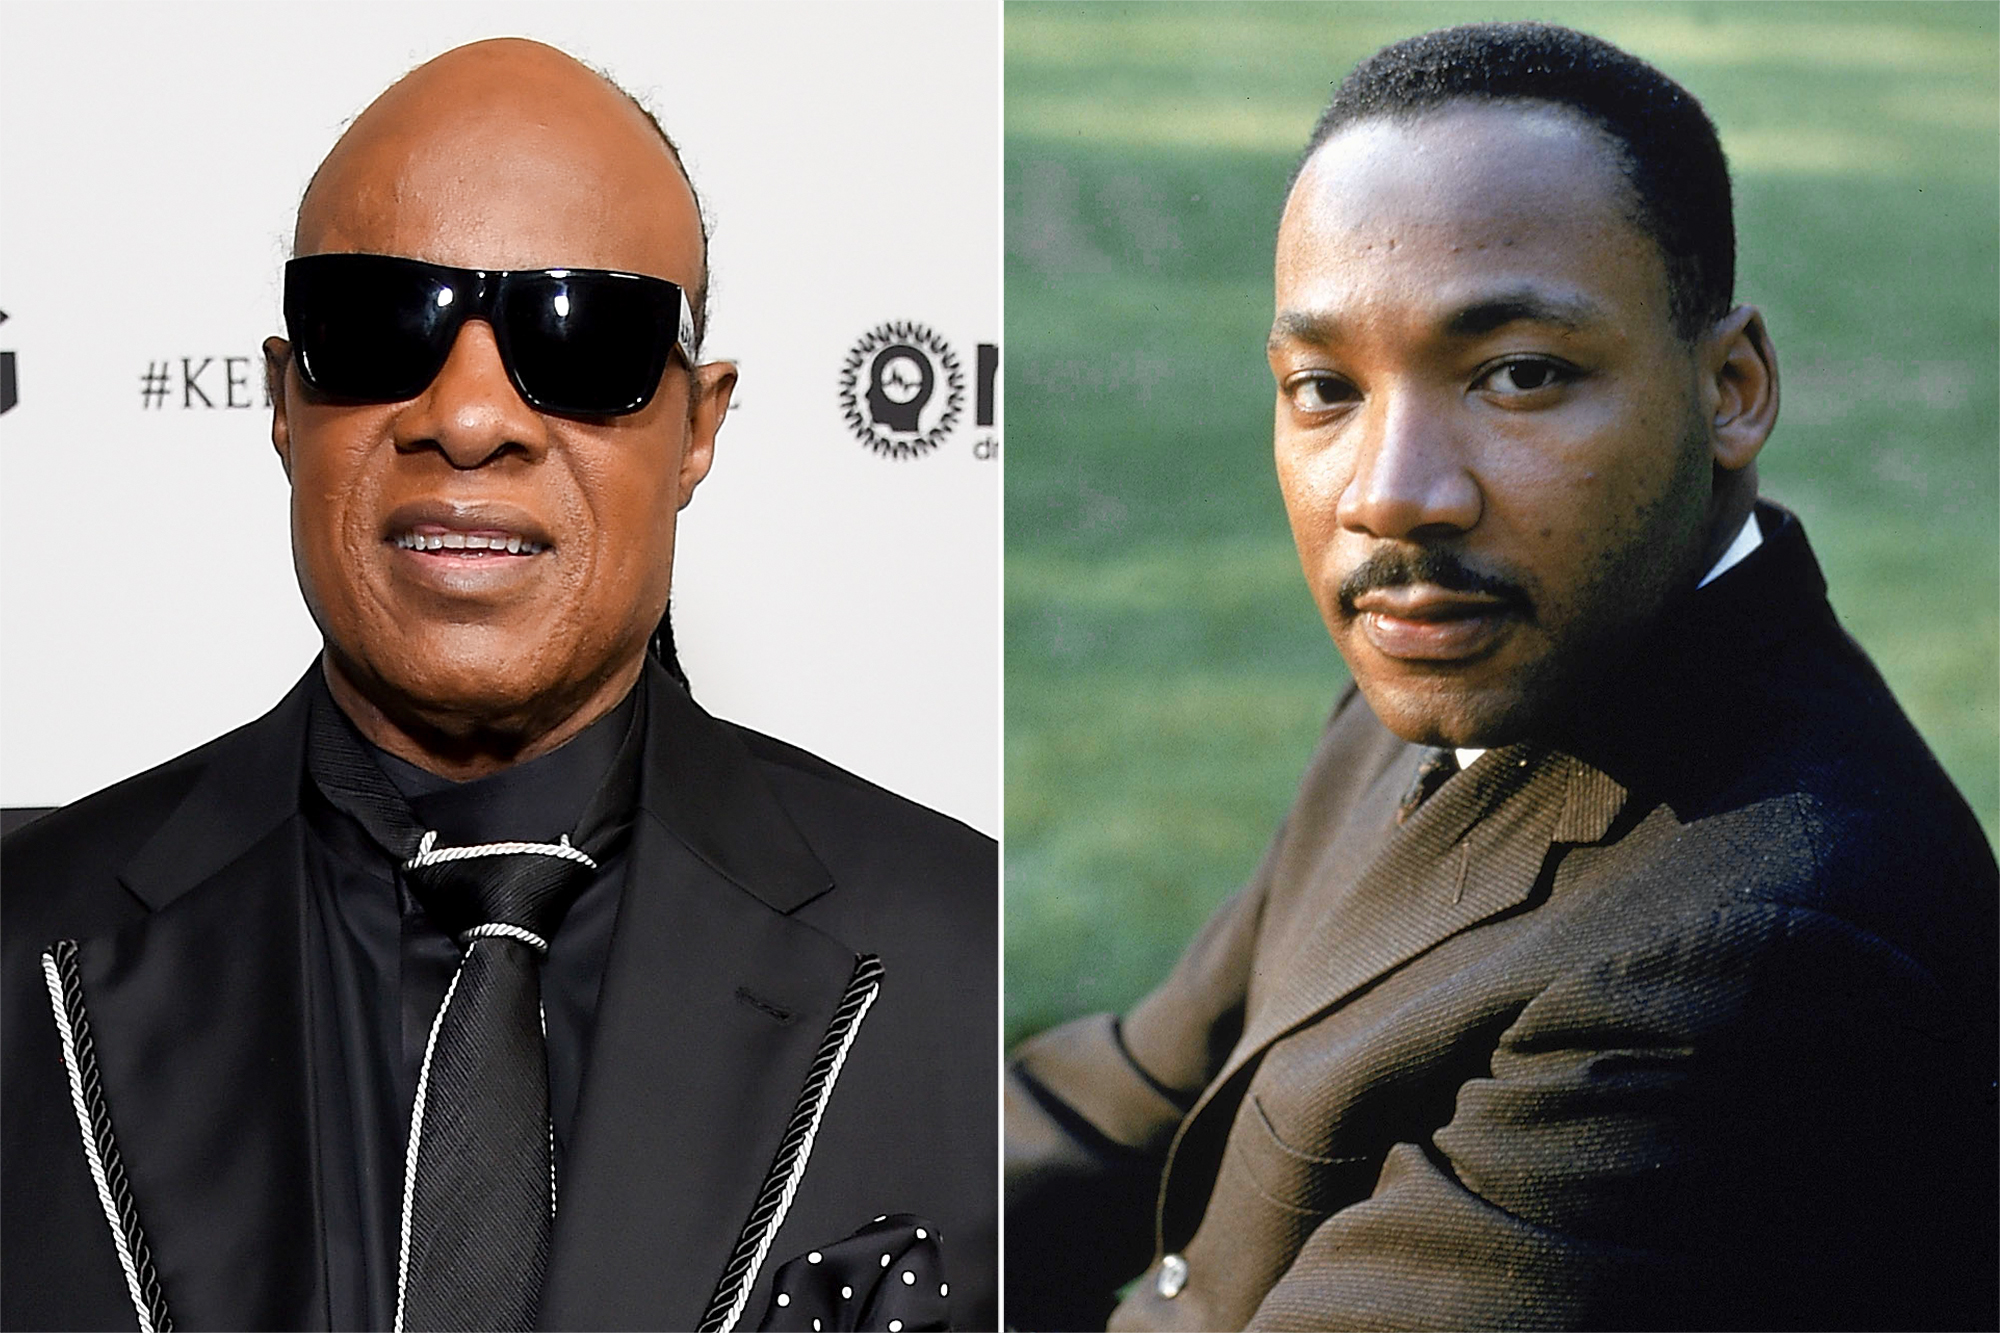 Ο Stevie Wonder ανησυχεί με την ευκαιρία της επετείου για τον Martin Luther King